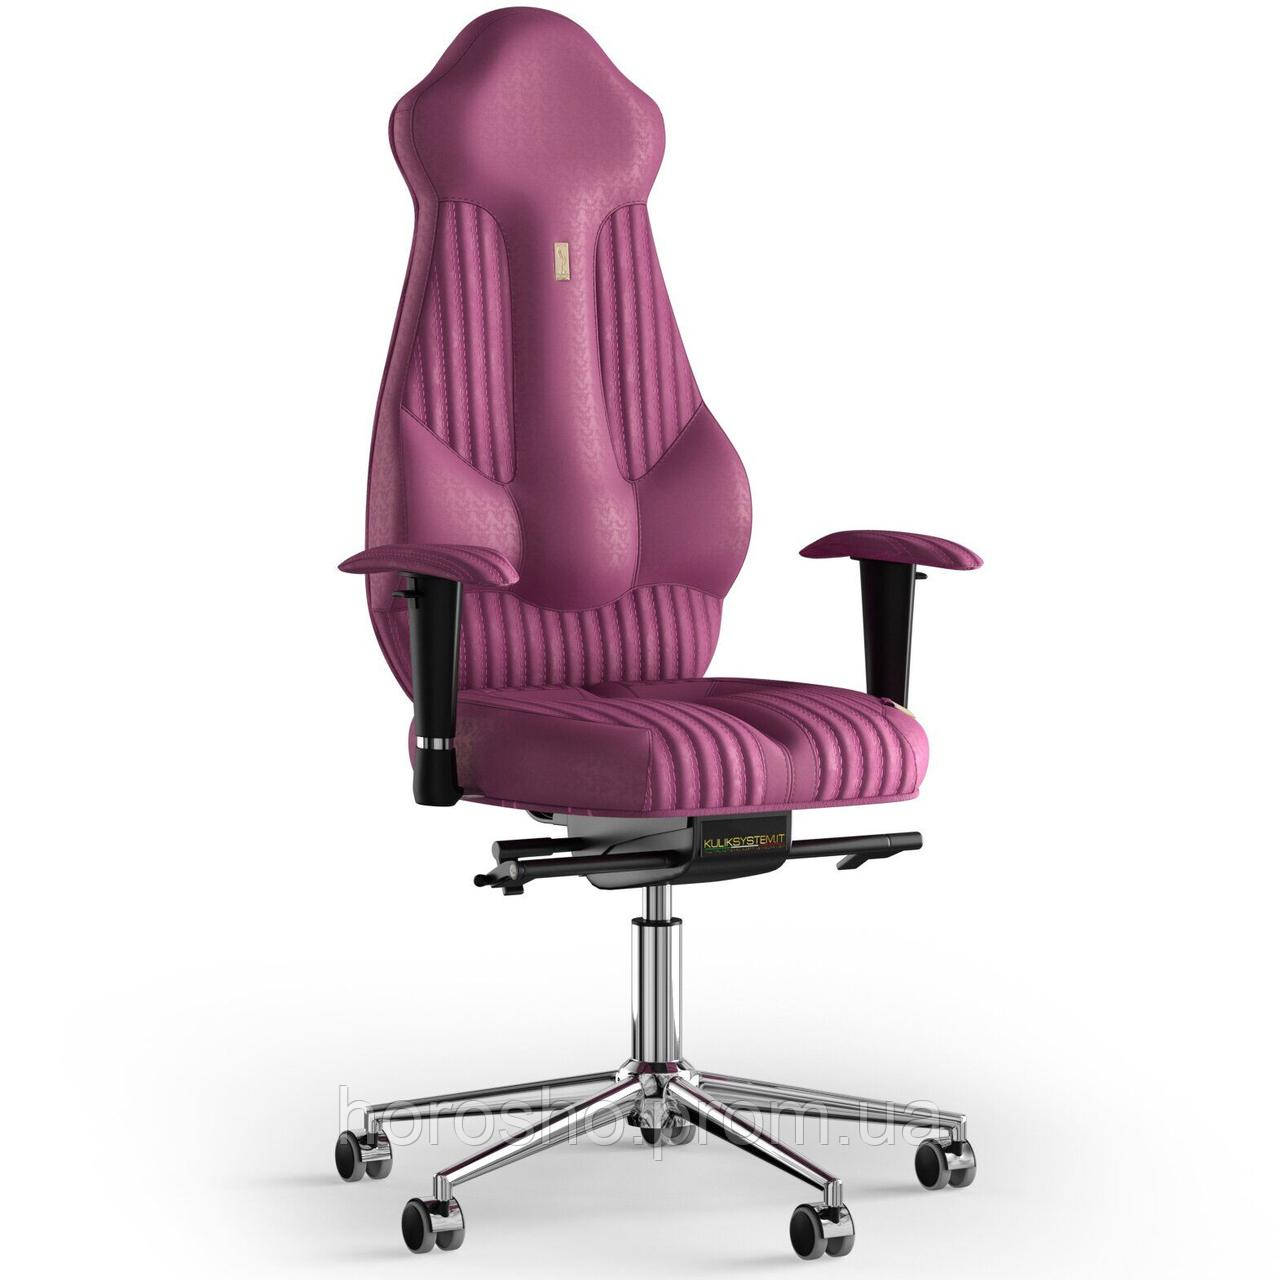 

Кресло KULIK SYSTEM IMPERIAL Антара с подголовником со строчкой Розовый 7-901-WS-MC-0312, КОД: 1685940